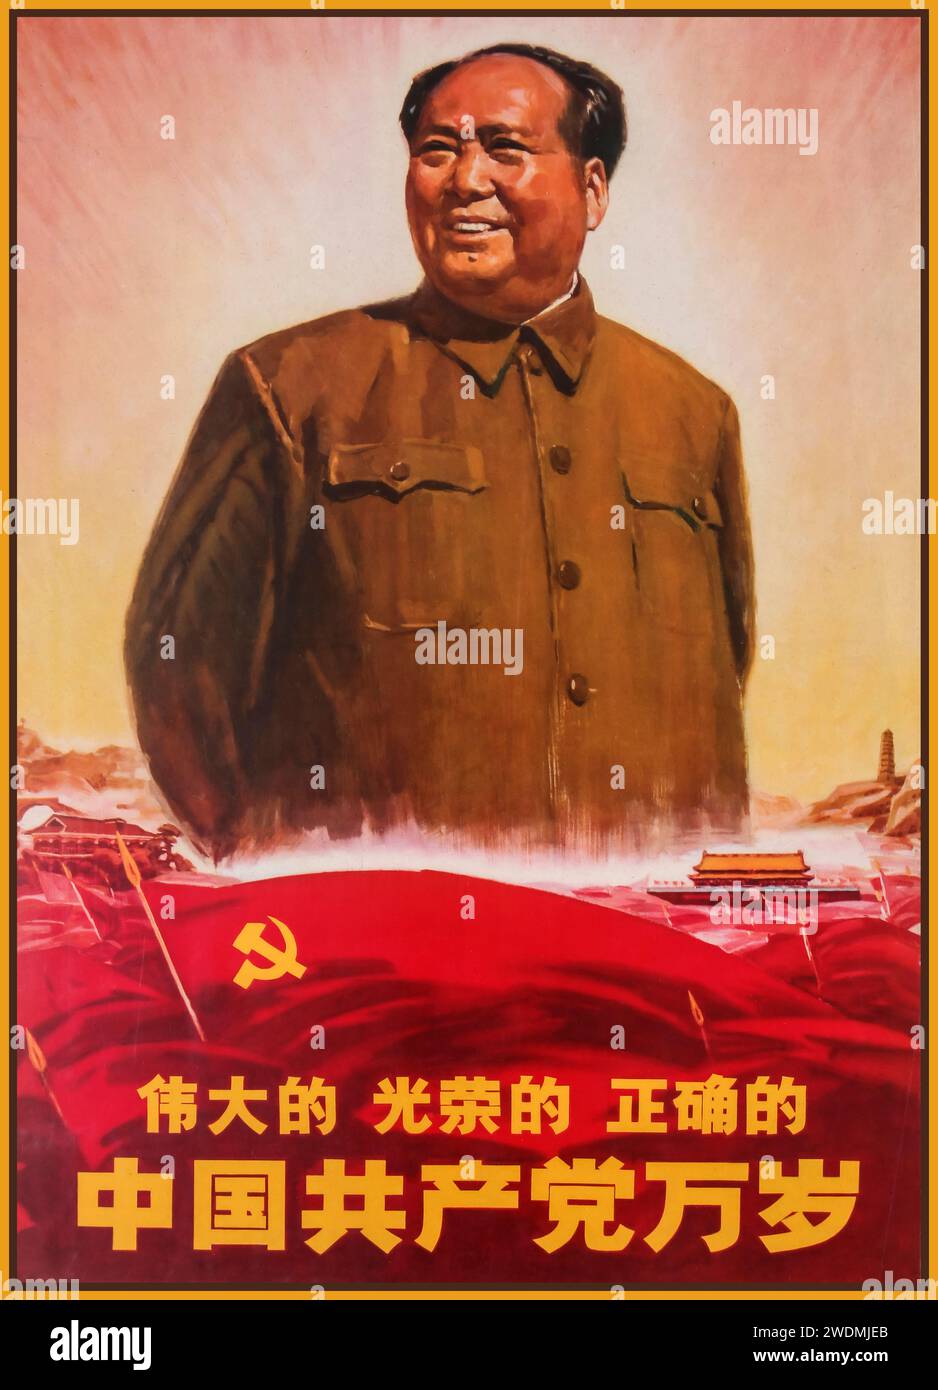 Poster DES VORSITZENDEN MAO Propaganda Mao Zedong. Die Illustration "GROSSARTIG GLORREICH GUT, LANG LEBE DIE KOMMUNISTISCHE PARTEI" zeigt einen lächelnden Mao Zedong und kommunistische Fahnen unter ihm. Land: China. Jahr: 1969. Stockfoto